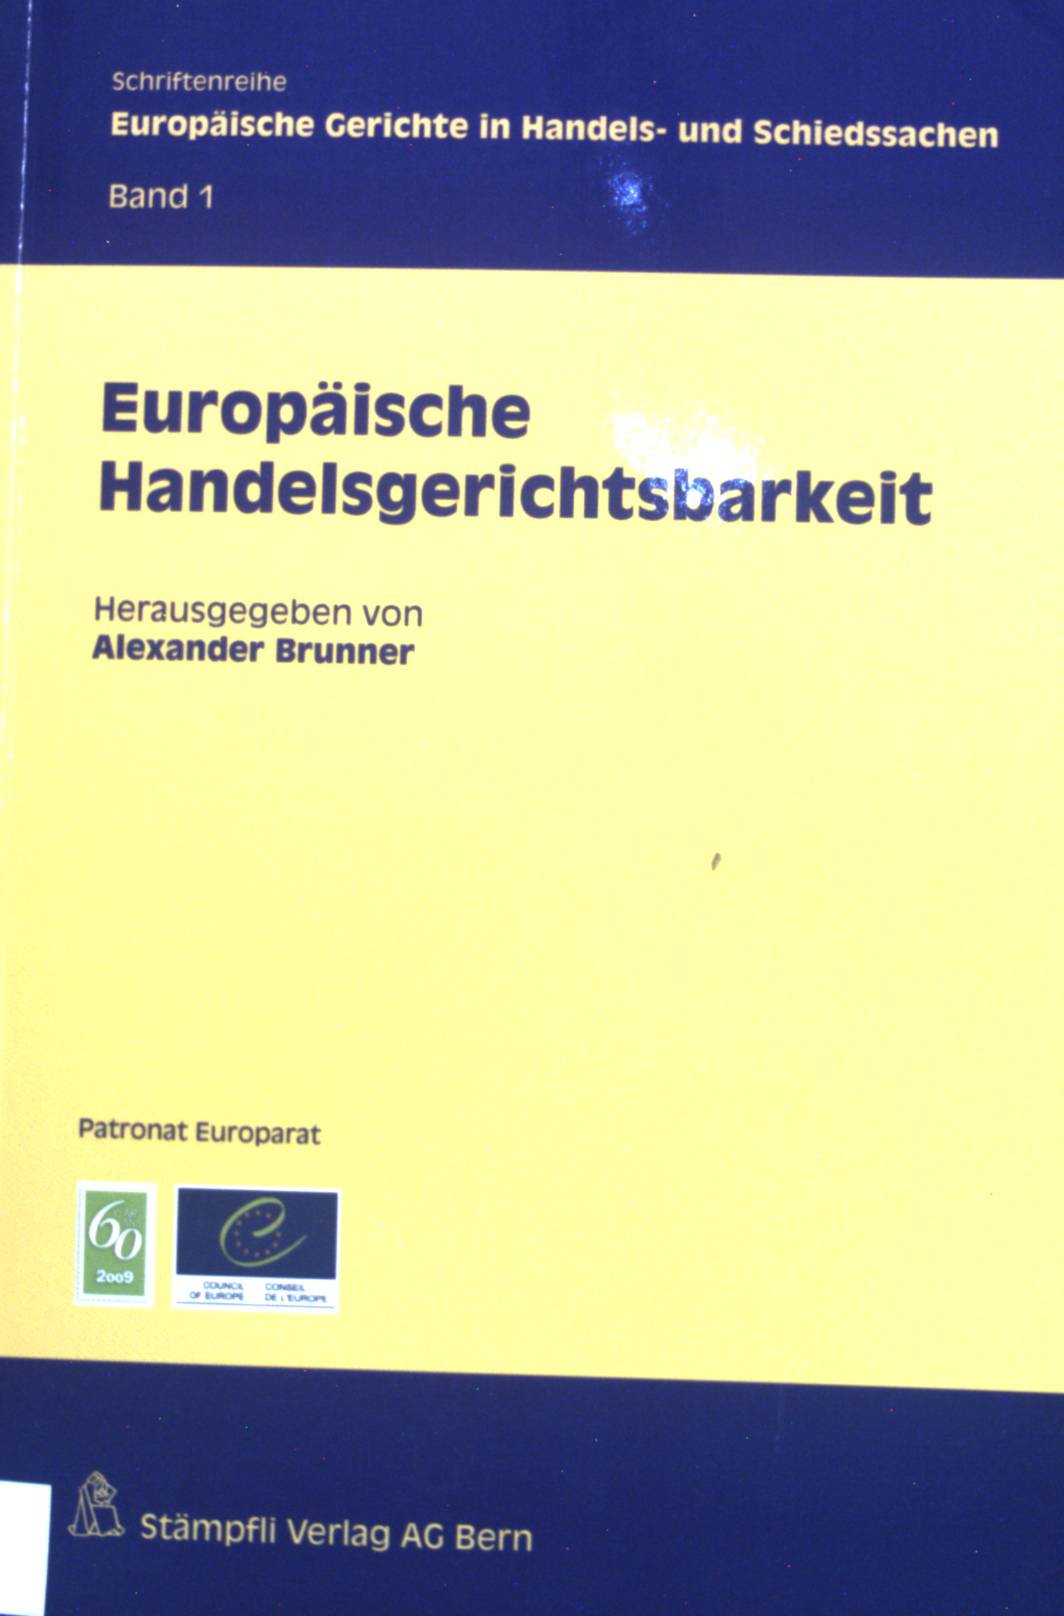 Europäische Handelsgerichtsbarkeit. Schriftenreihe europäische Gerichte in Handels- und Schiedssachen ; Band. 1 - Brunner, Alexander